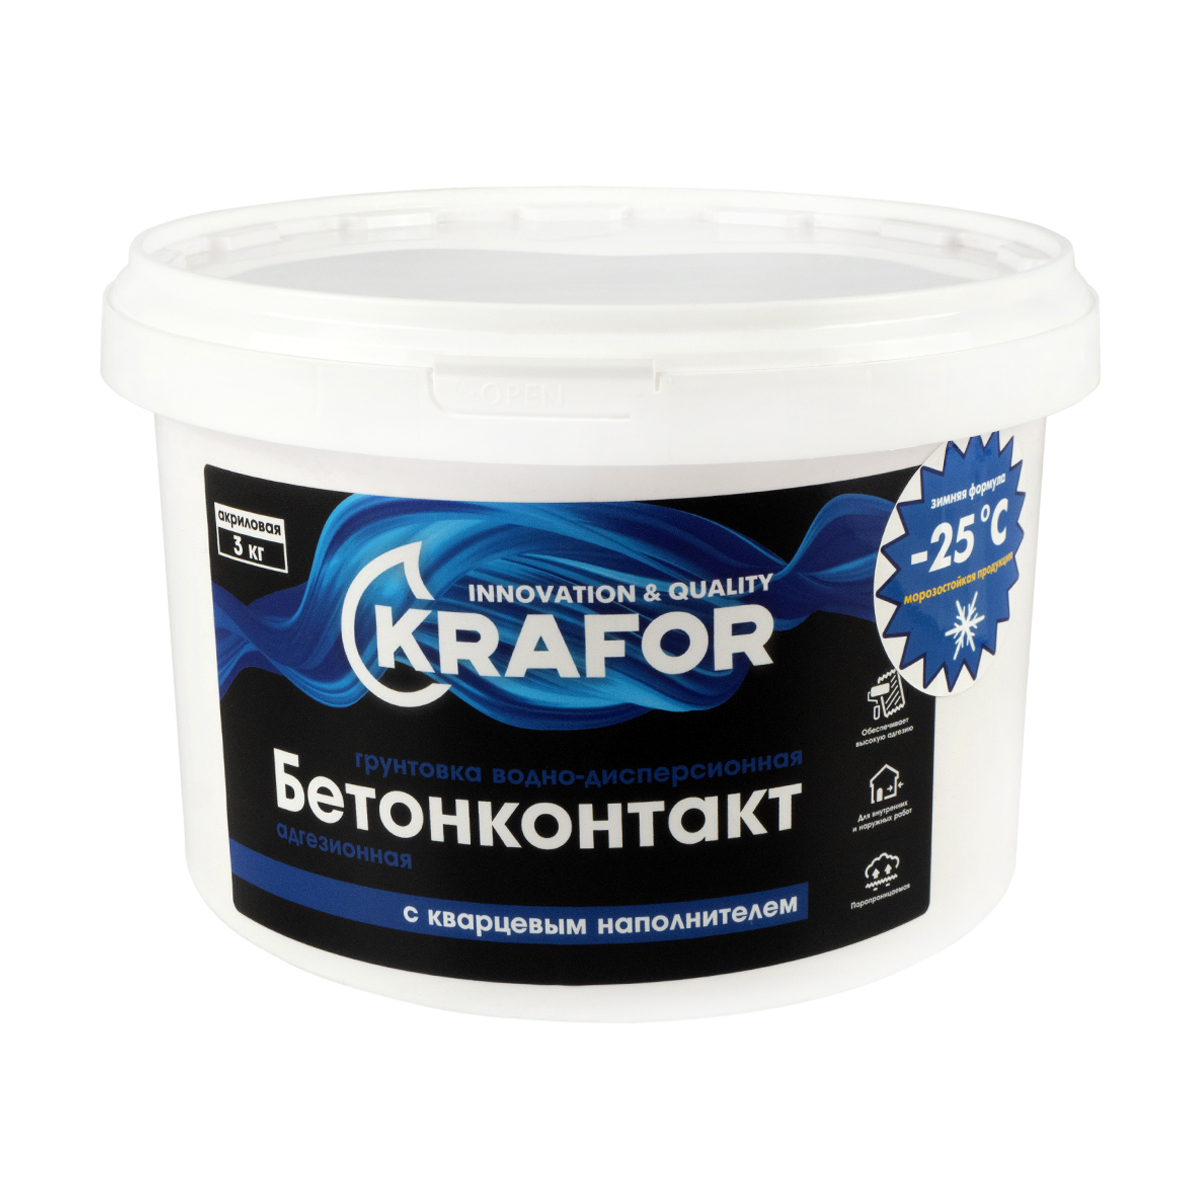 Грунтовка Krafor водно-дисперсионная бетонконтакт, 3 кг грунтовка plitonit бетонконтакт 4 5 кг